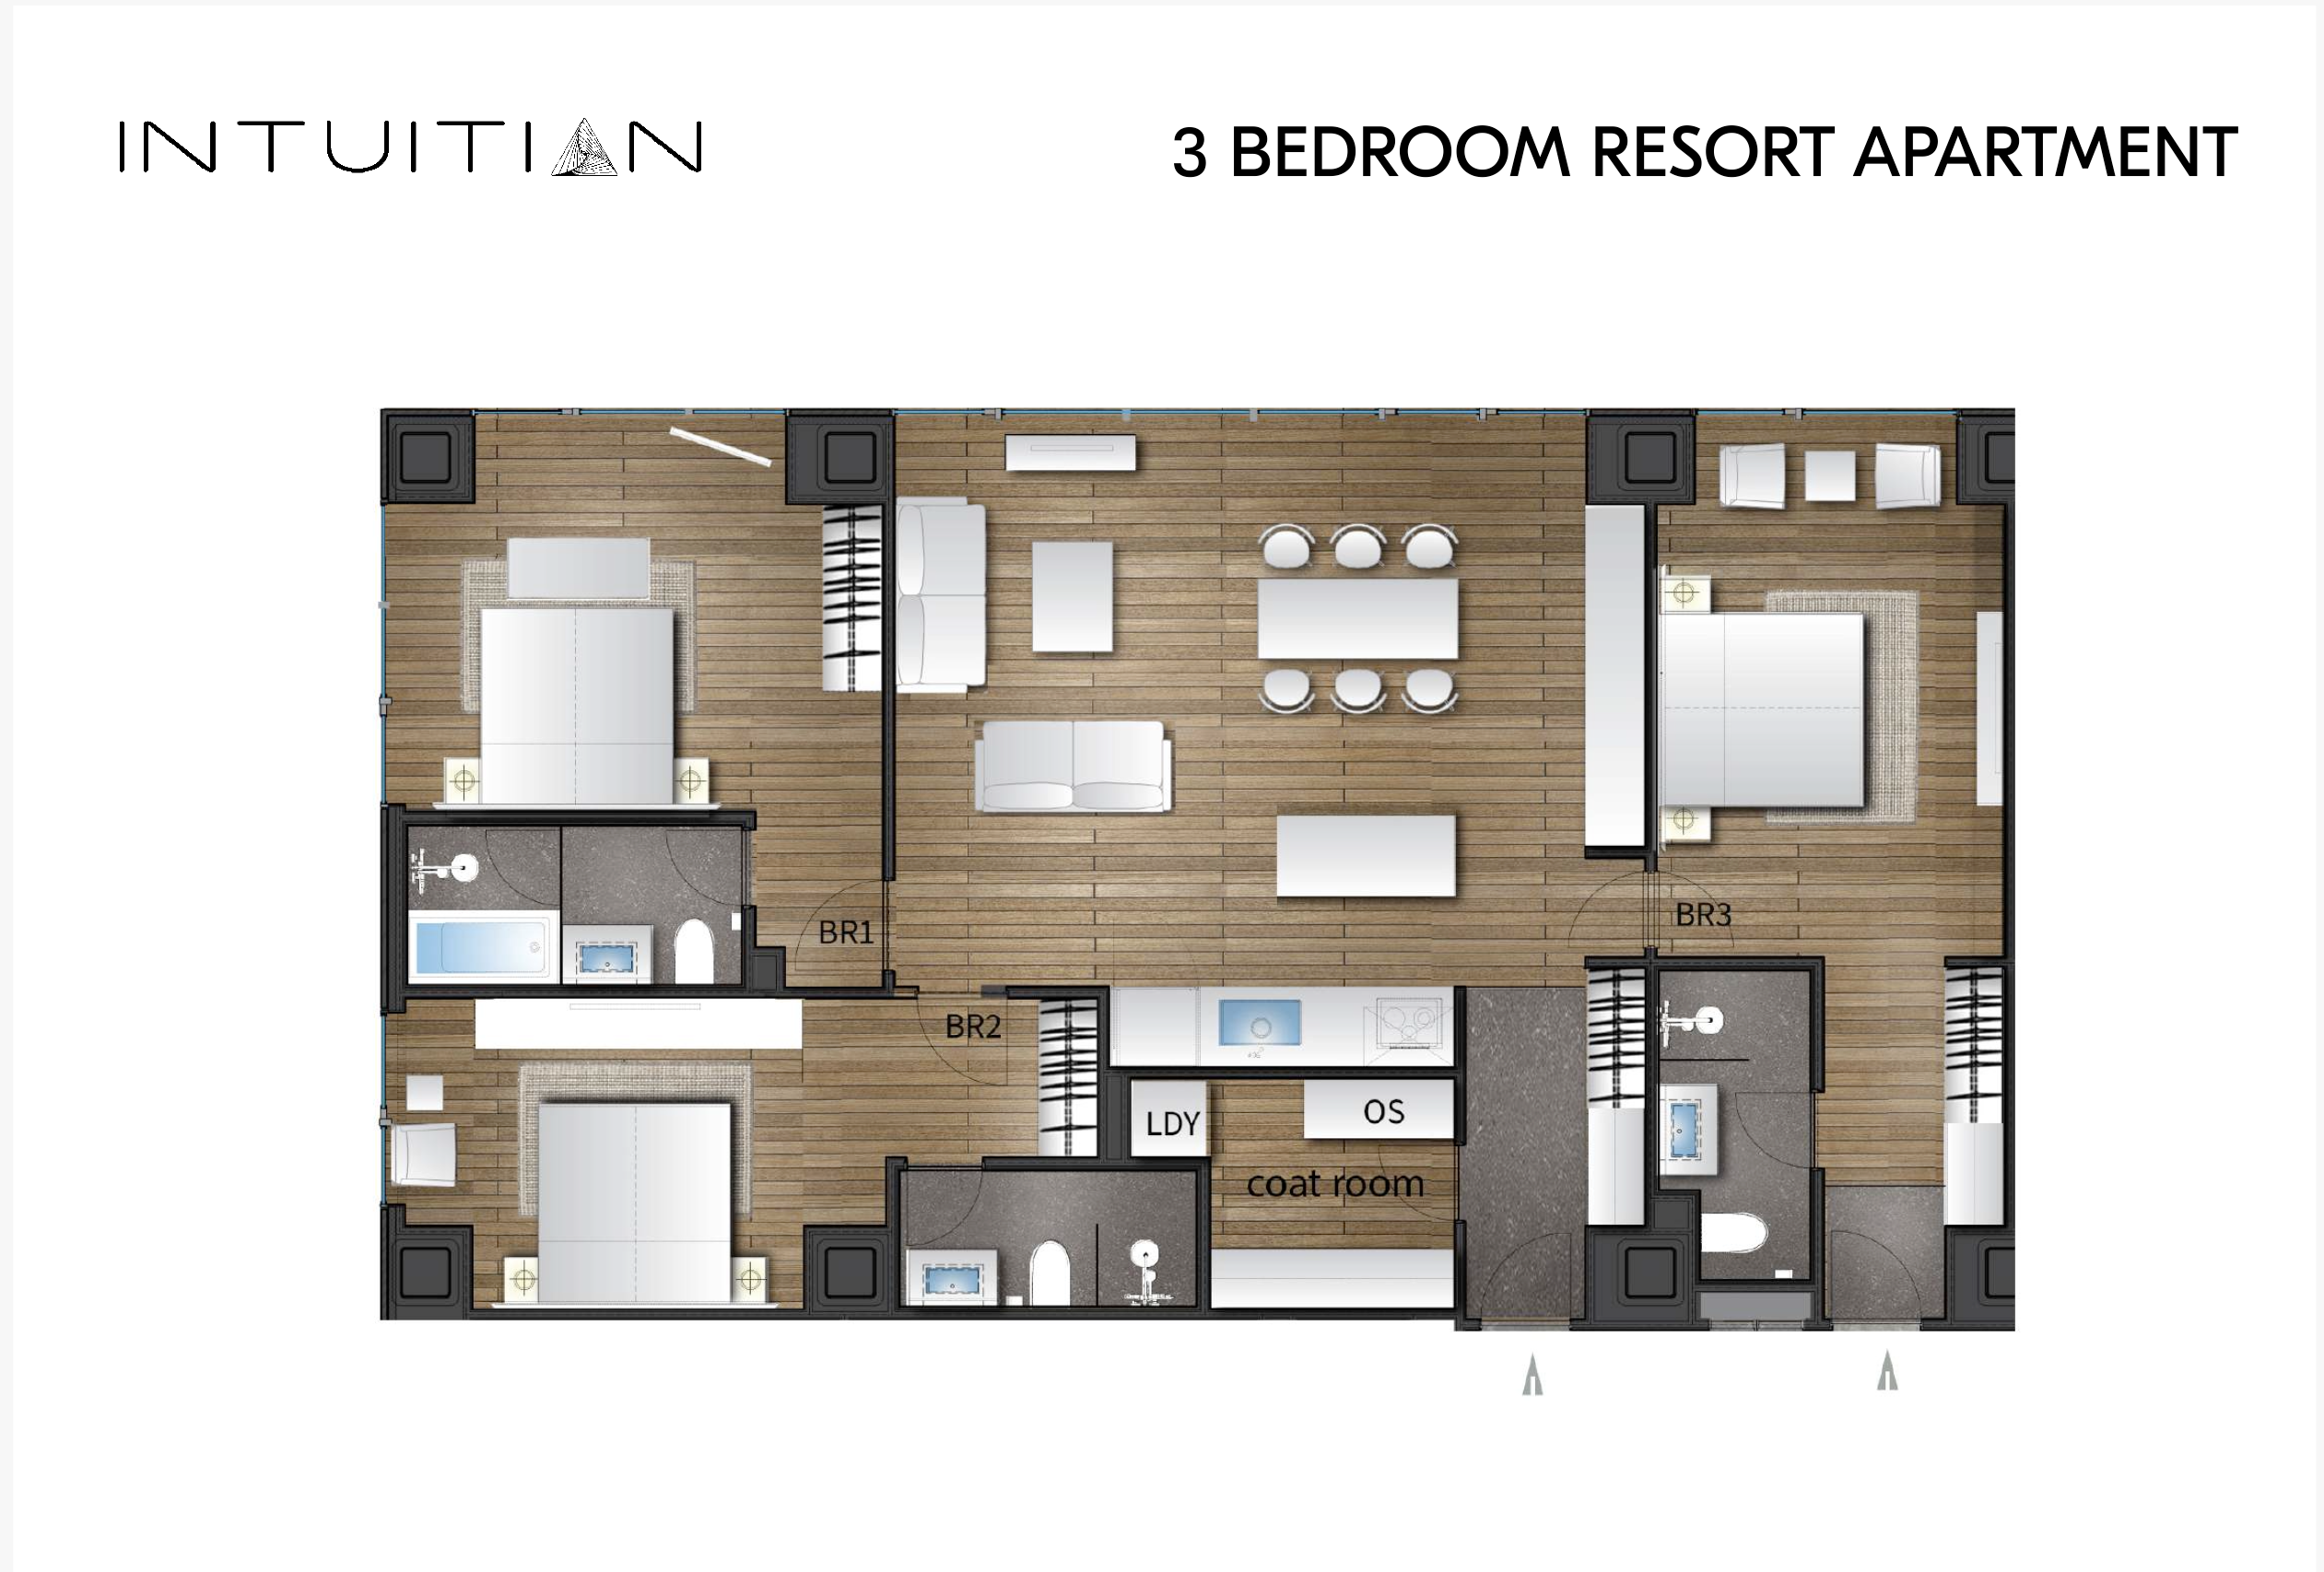 Intuition Niseko_2 bedroom resort_floor plan